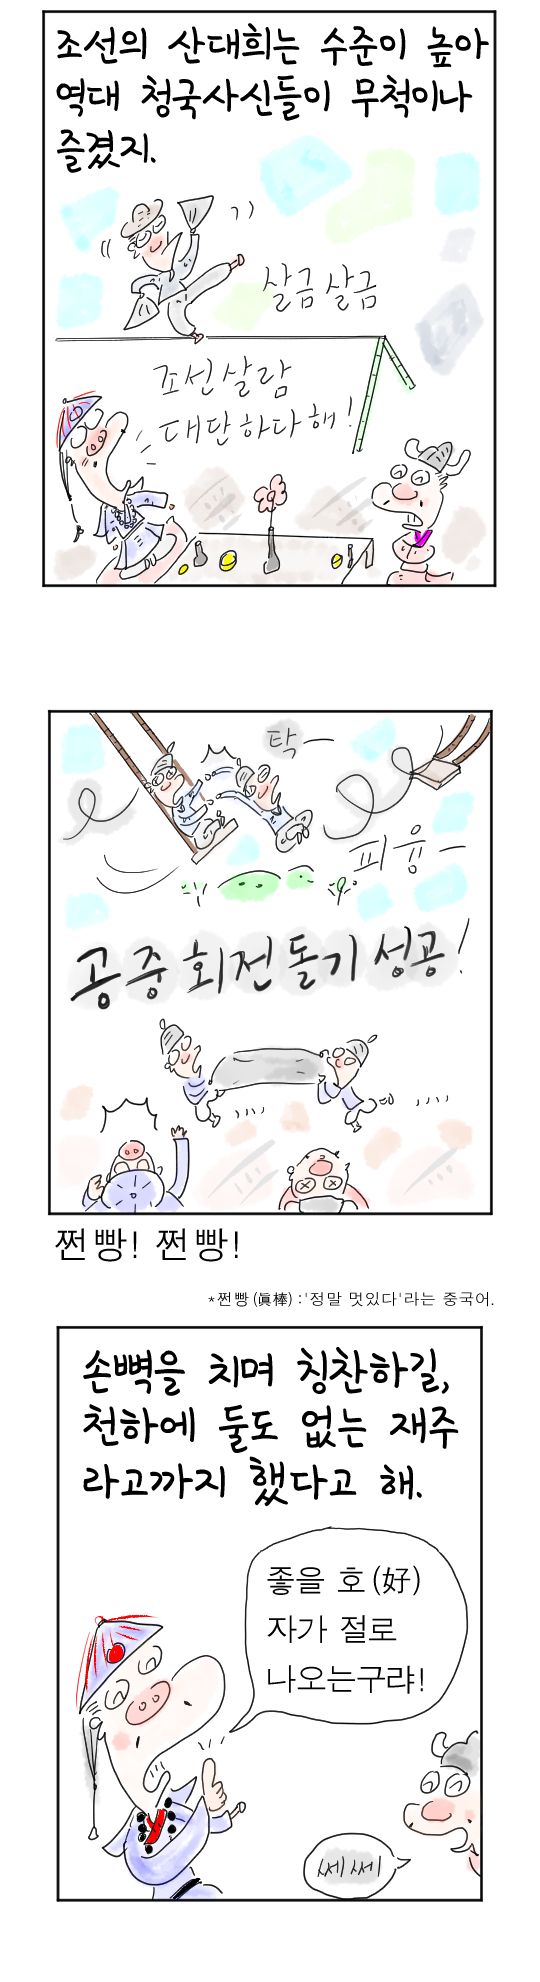 [역사툰] 史(사)람 이야기 20화: 조선 제일 춤꾼, 탁문한
